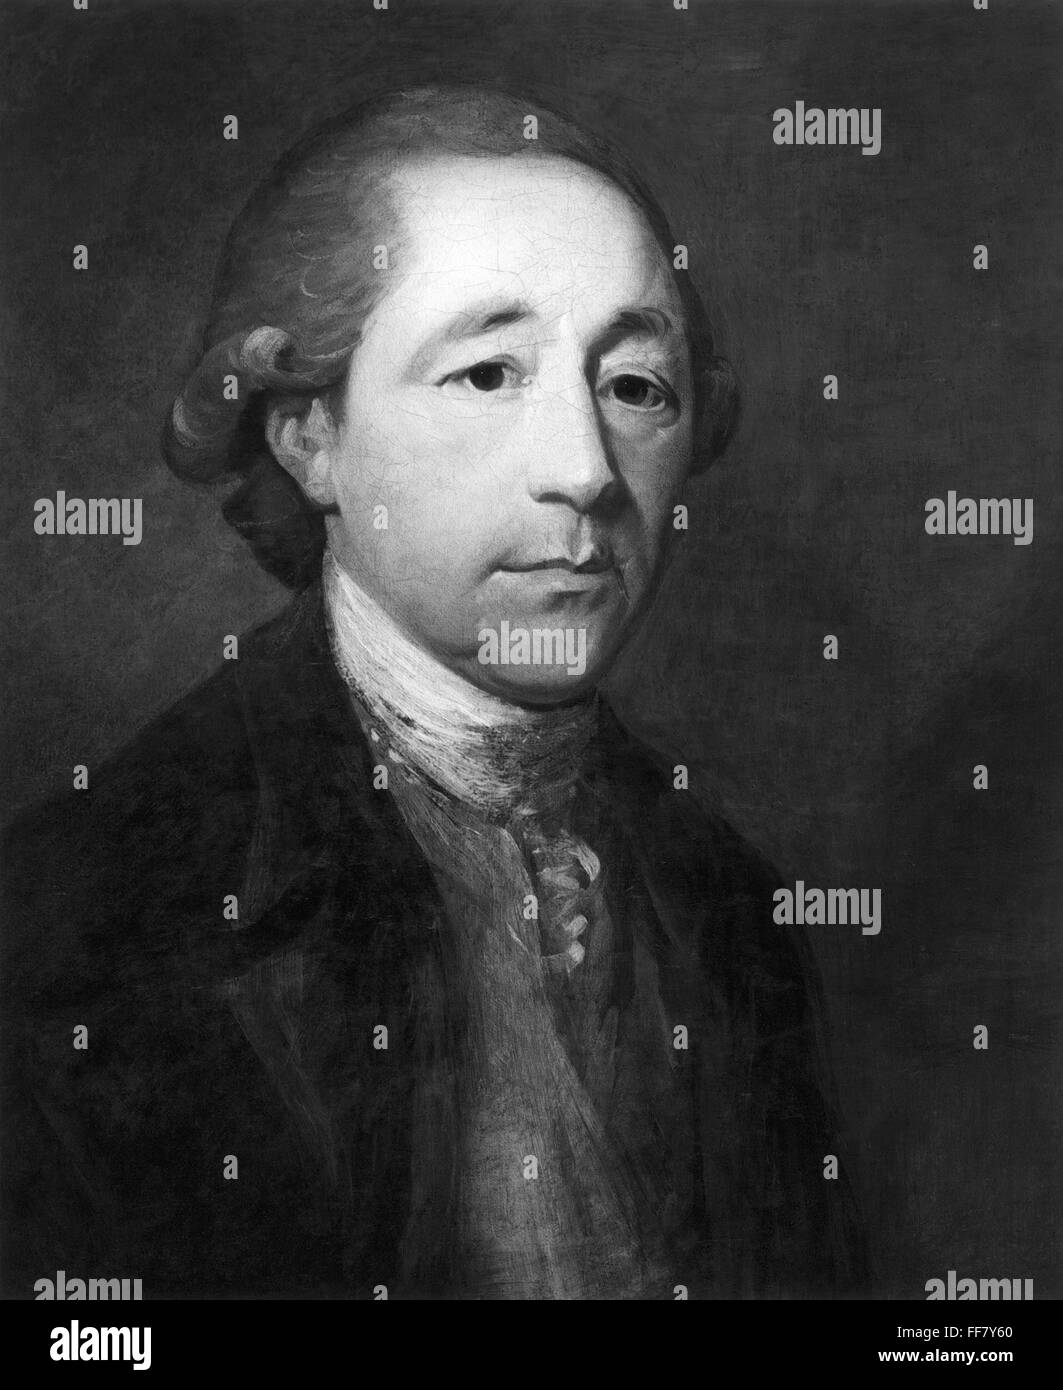 MATTHEW BOULTON (1728-1809). /NEnglish fabricante e ingeniero. Óleo sobre lienzo por un artista desconocido. Foto de stock